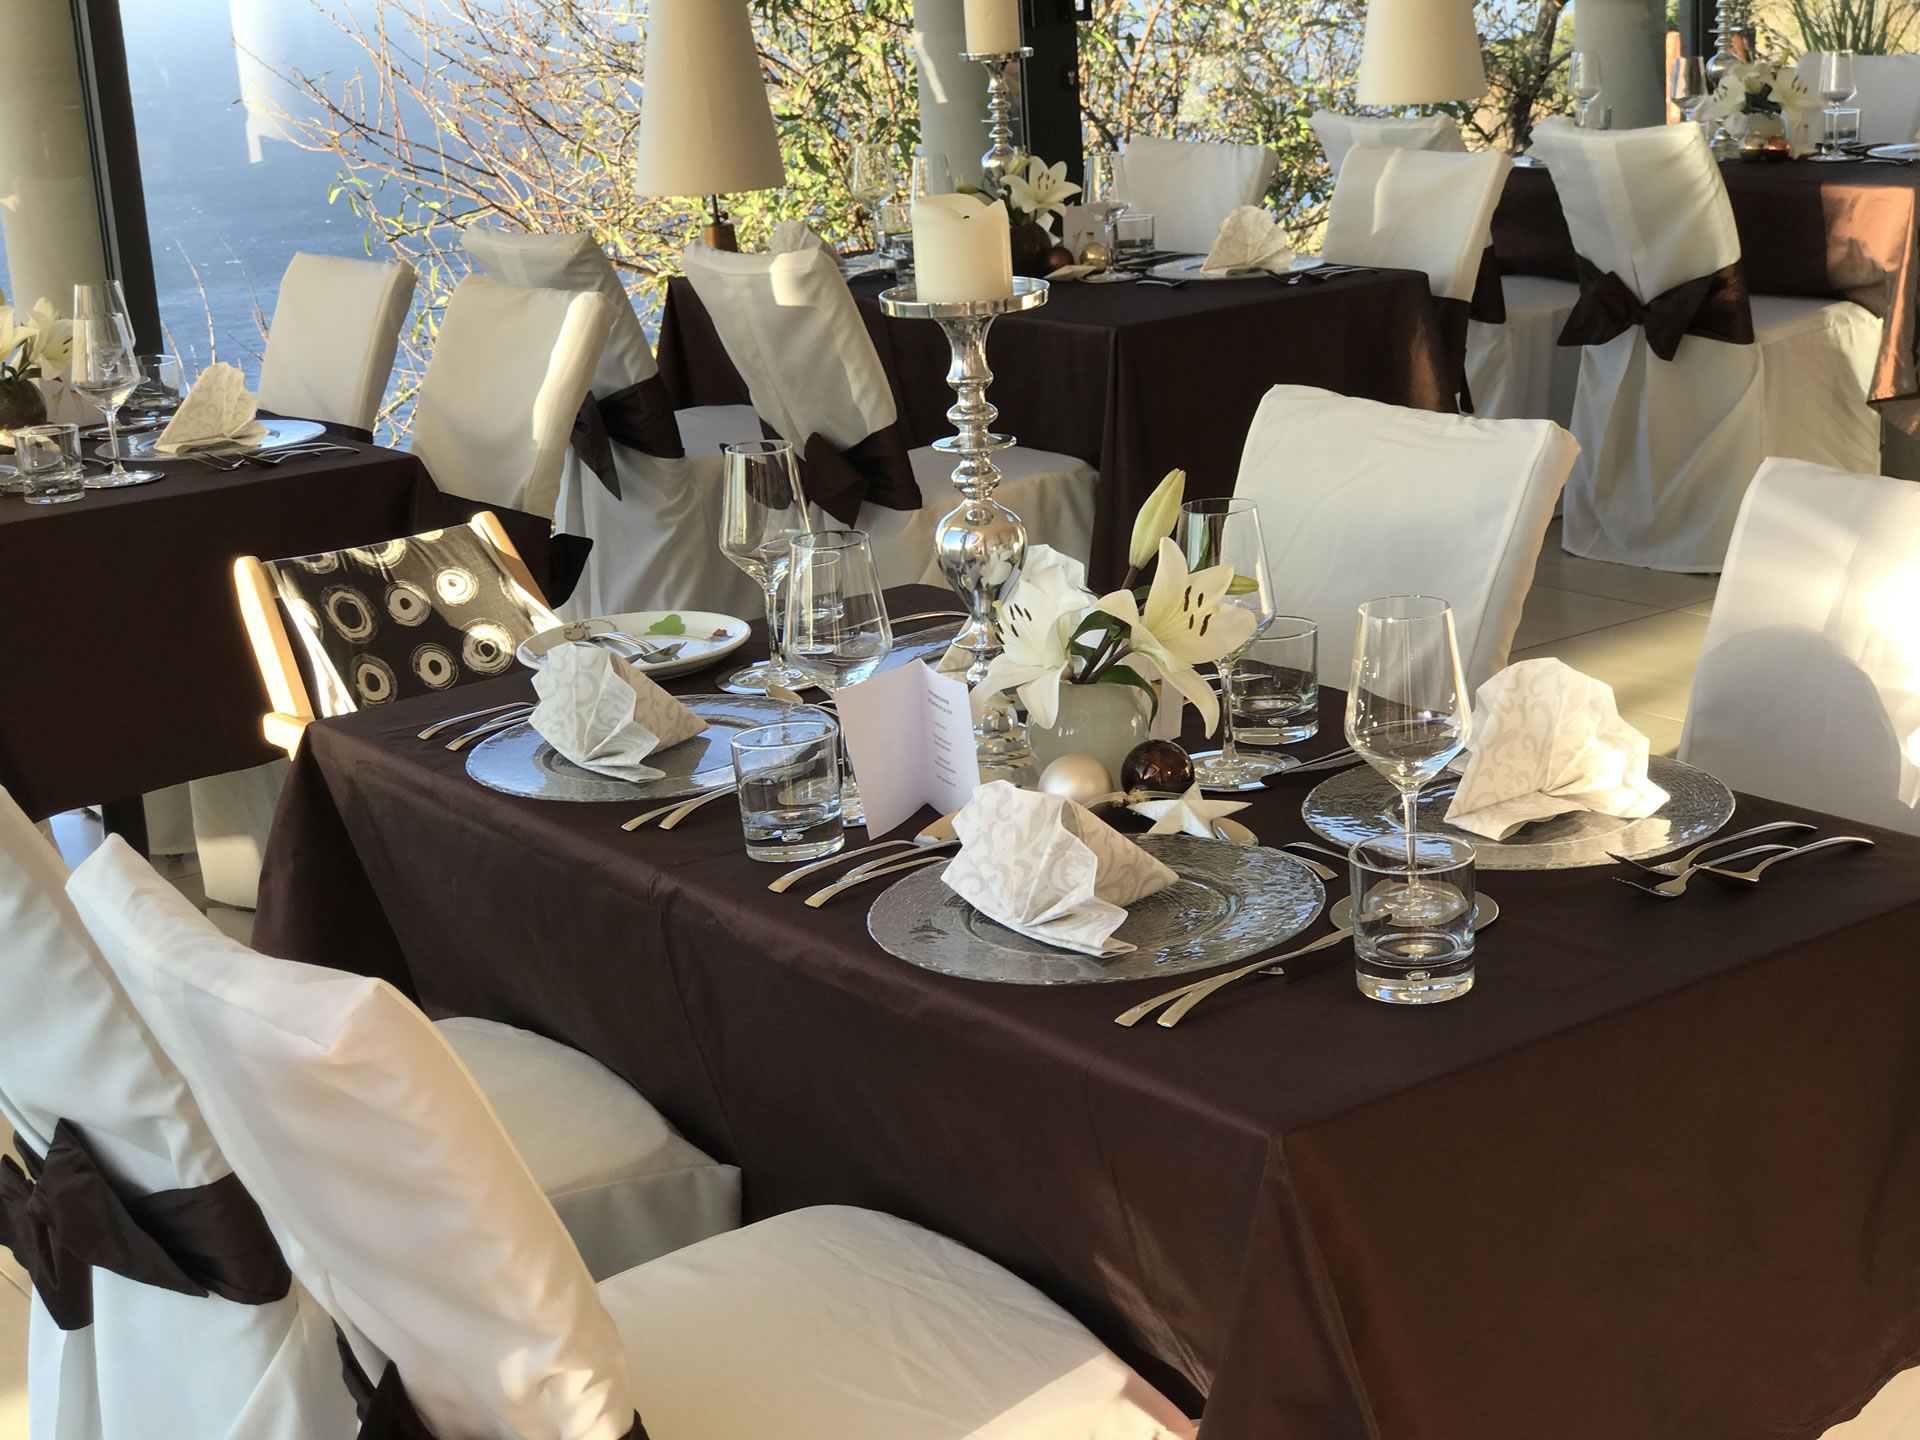 Jardin de la Paz private Feiern mit Tisch & Ausblick